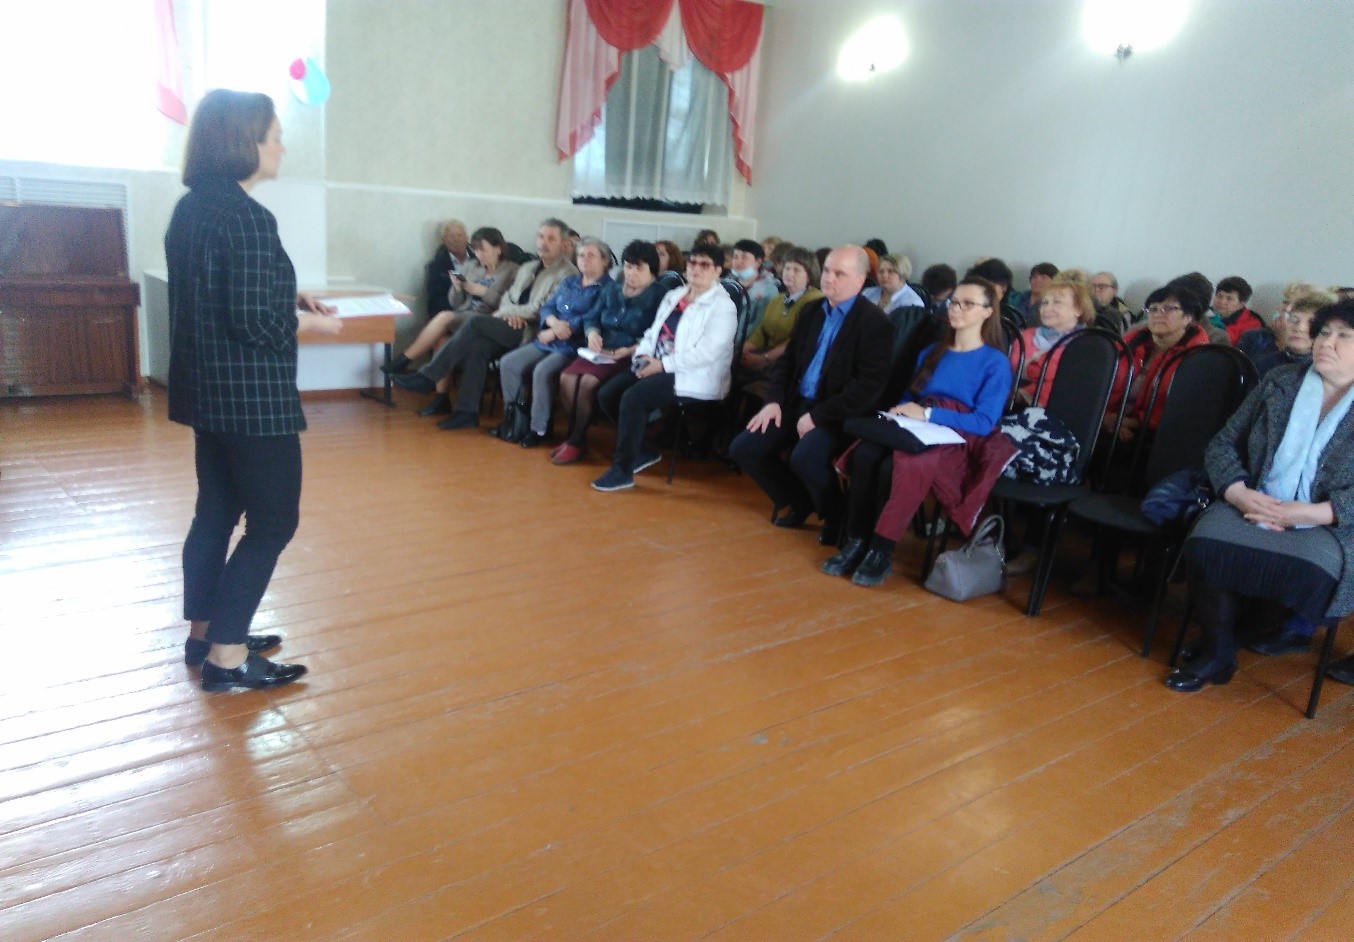 Первый день недели региональной акции «Развитие финансовой грамотности и налоговой культуры в Ульяновской области».